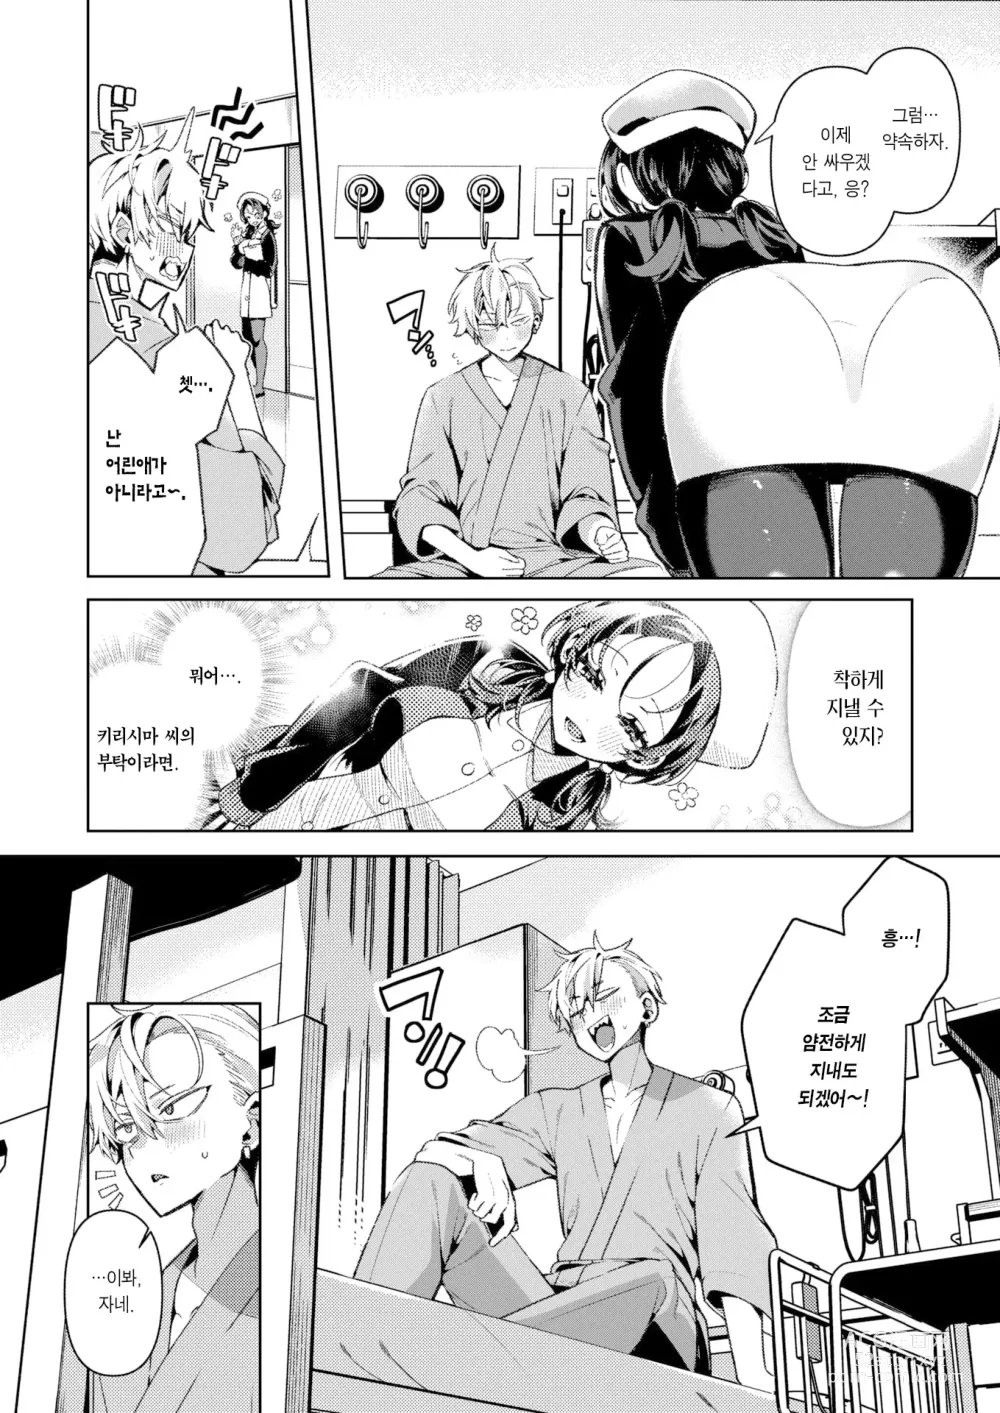 Page 4 of manga 친절한? 간호사, 키리시마 씨